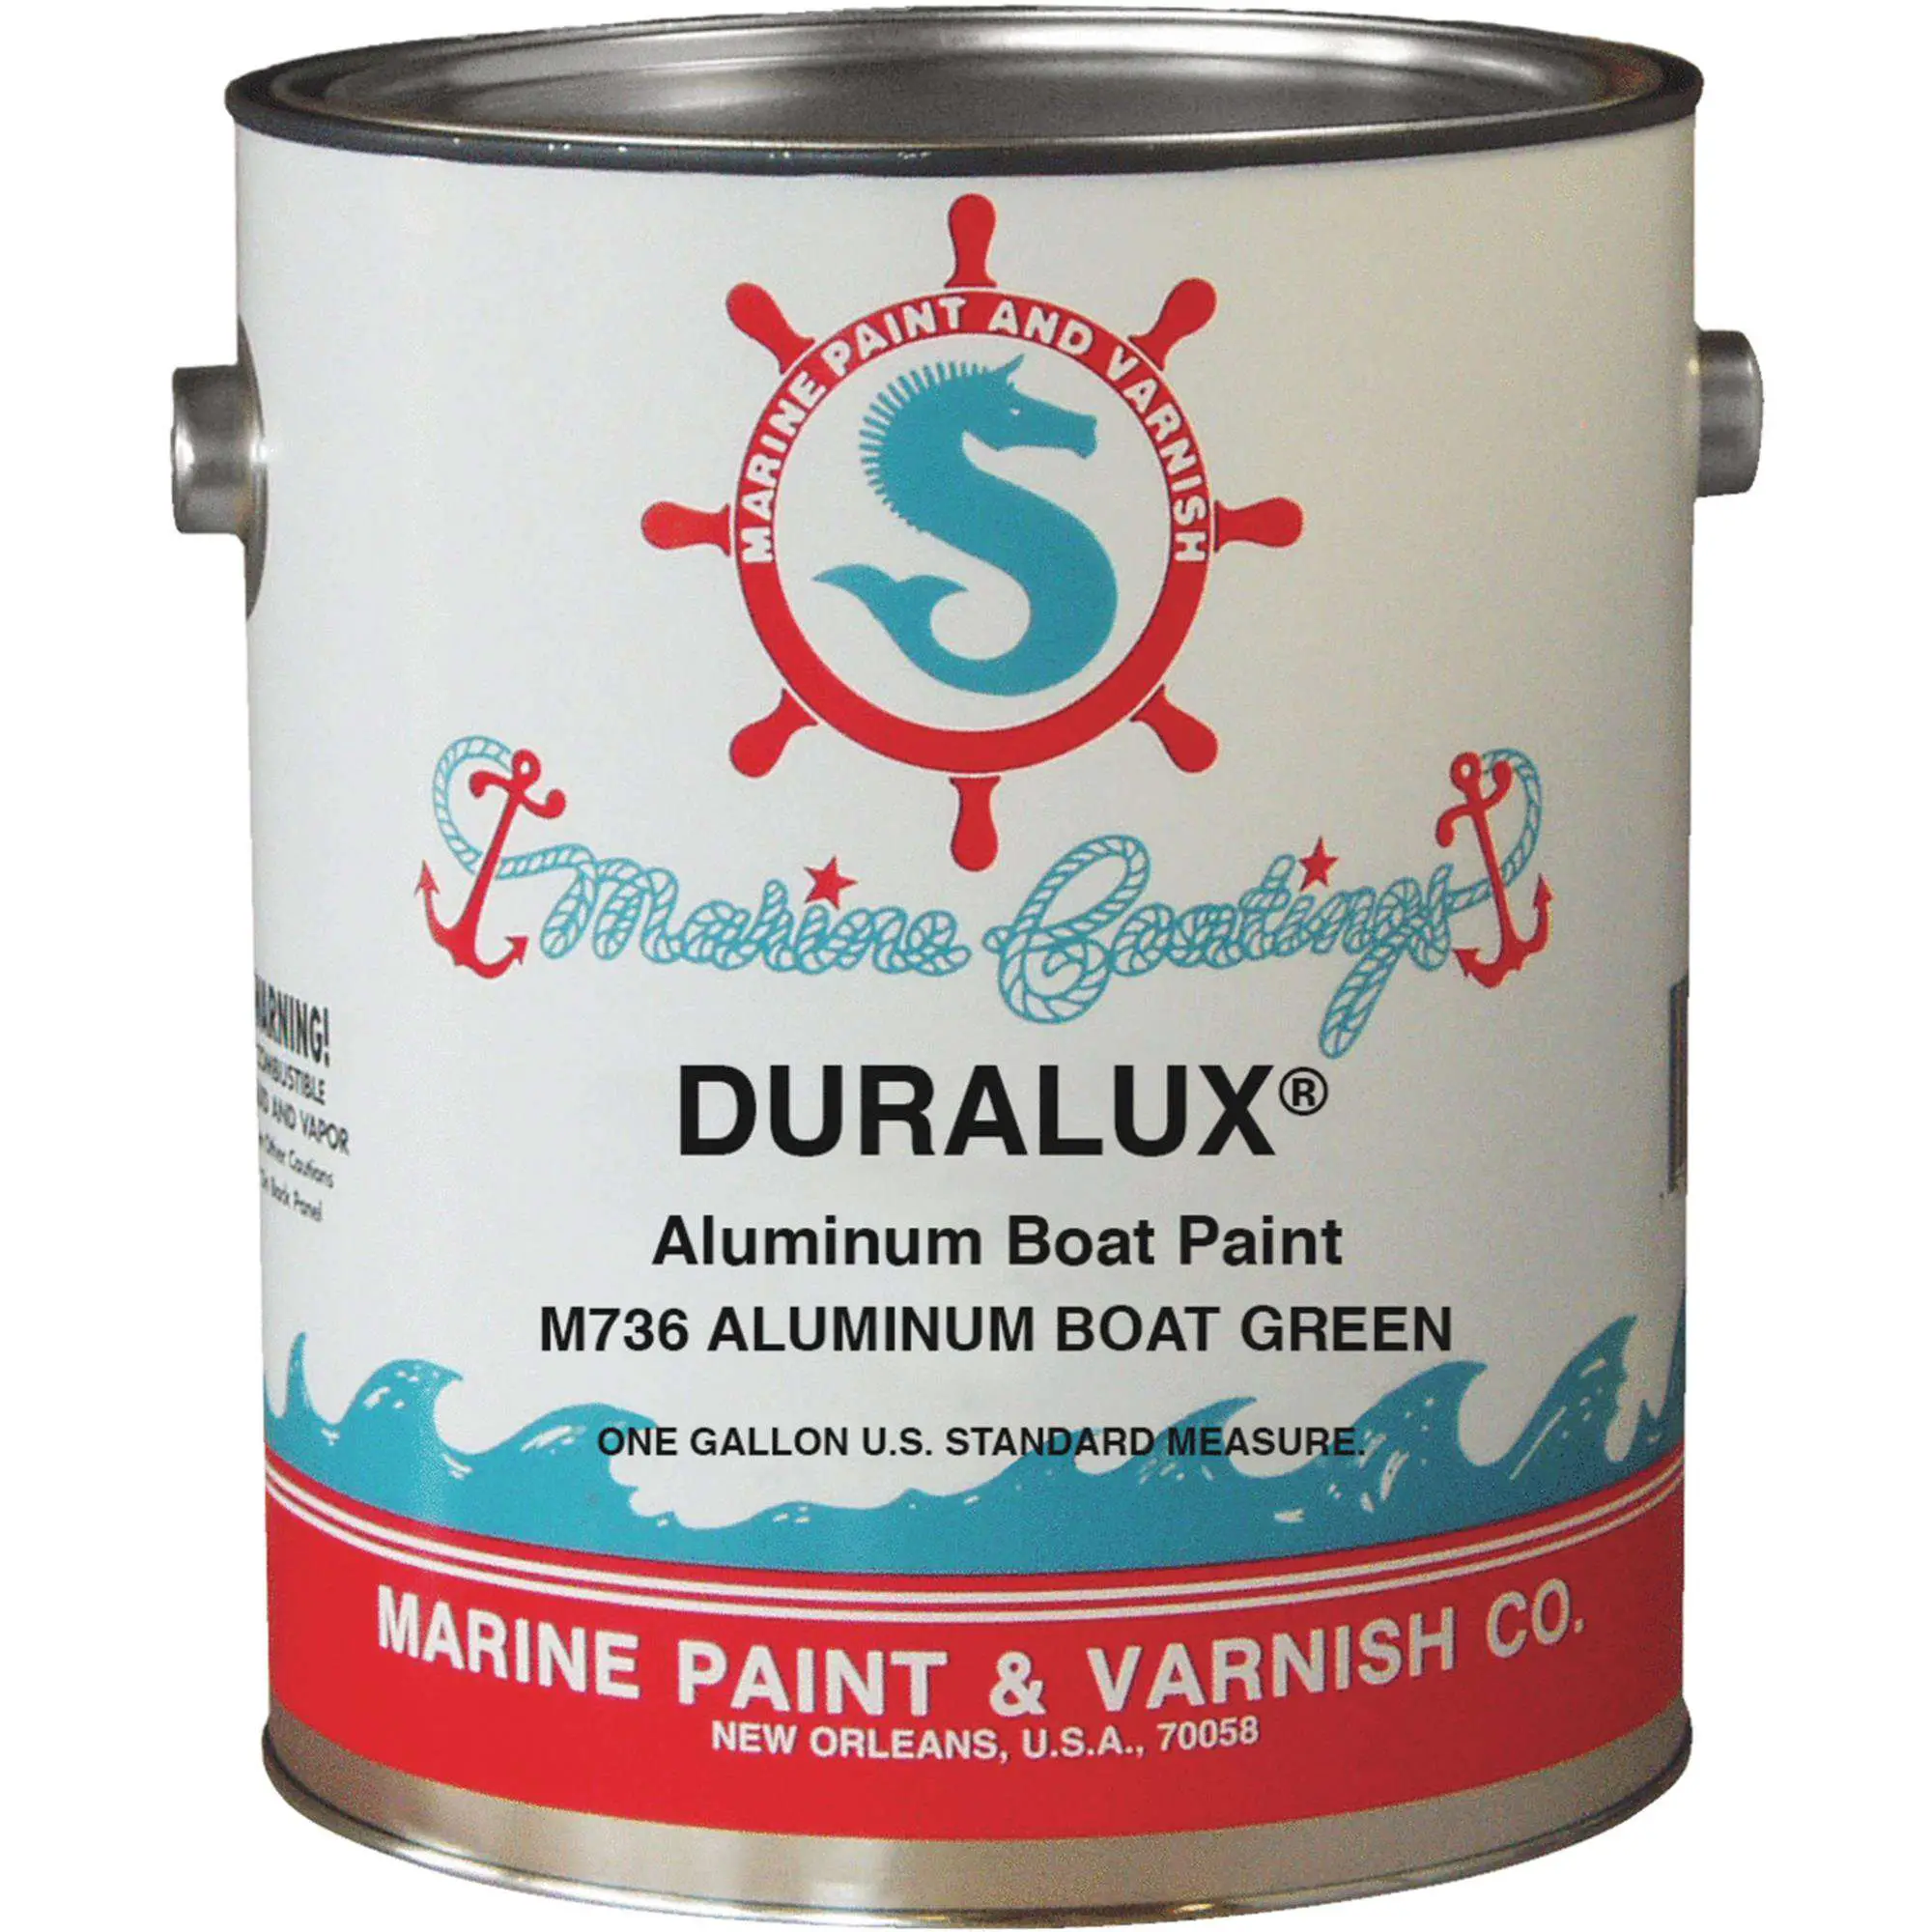 DURALUX Marine Aluminum Boat Paint